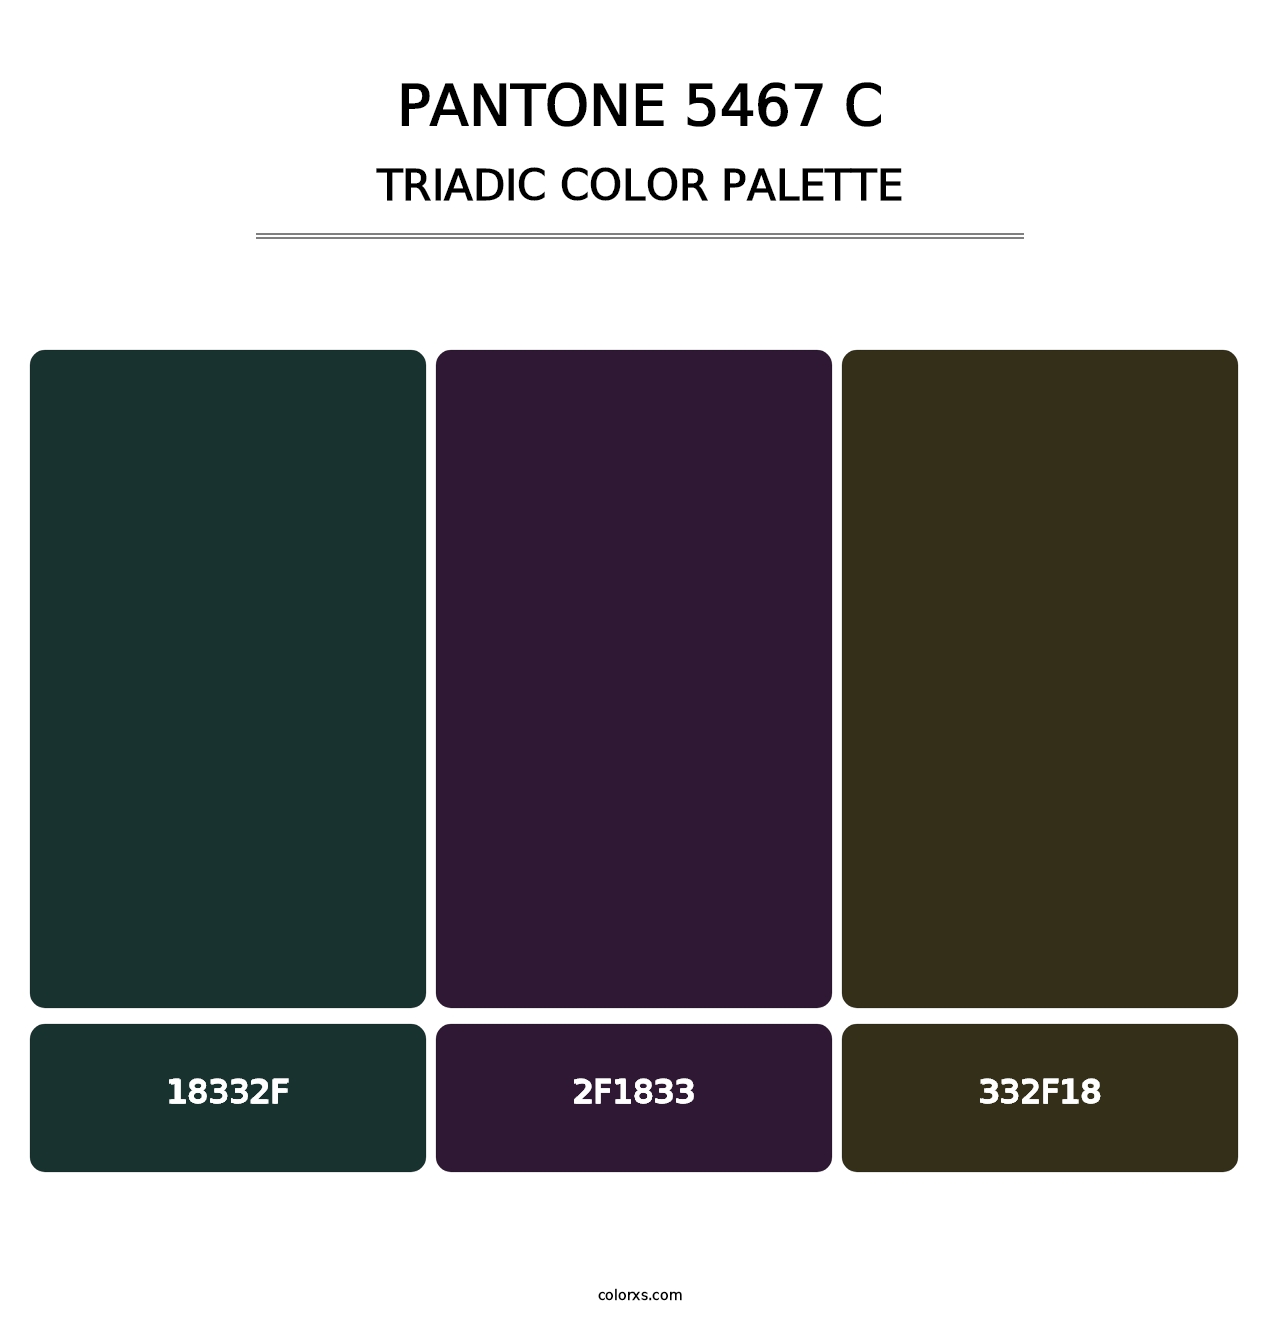 PANTONE 5467 C - Triadic Color Palette